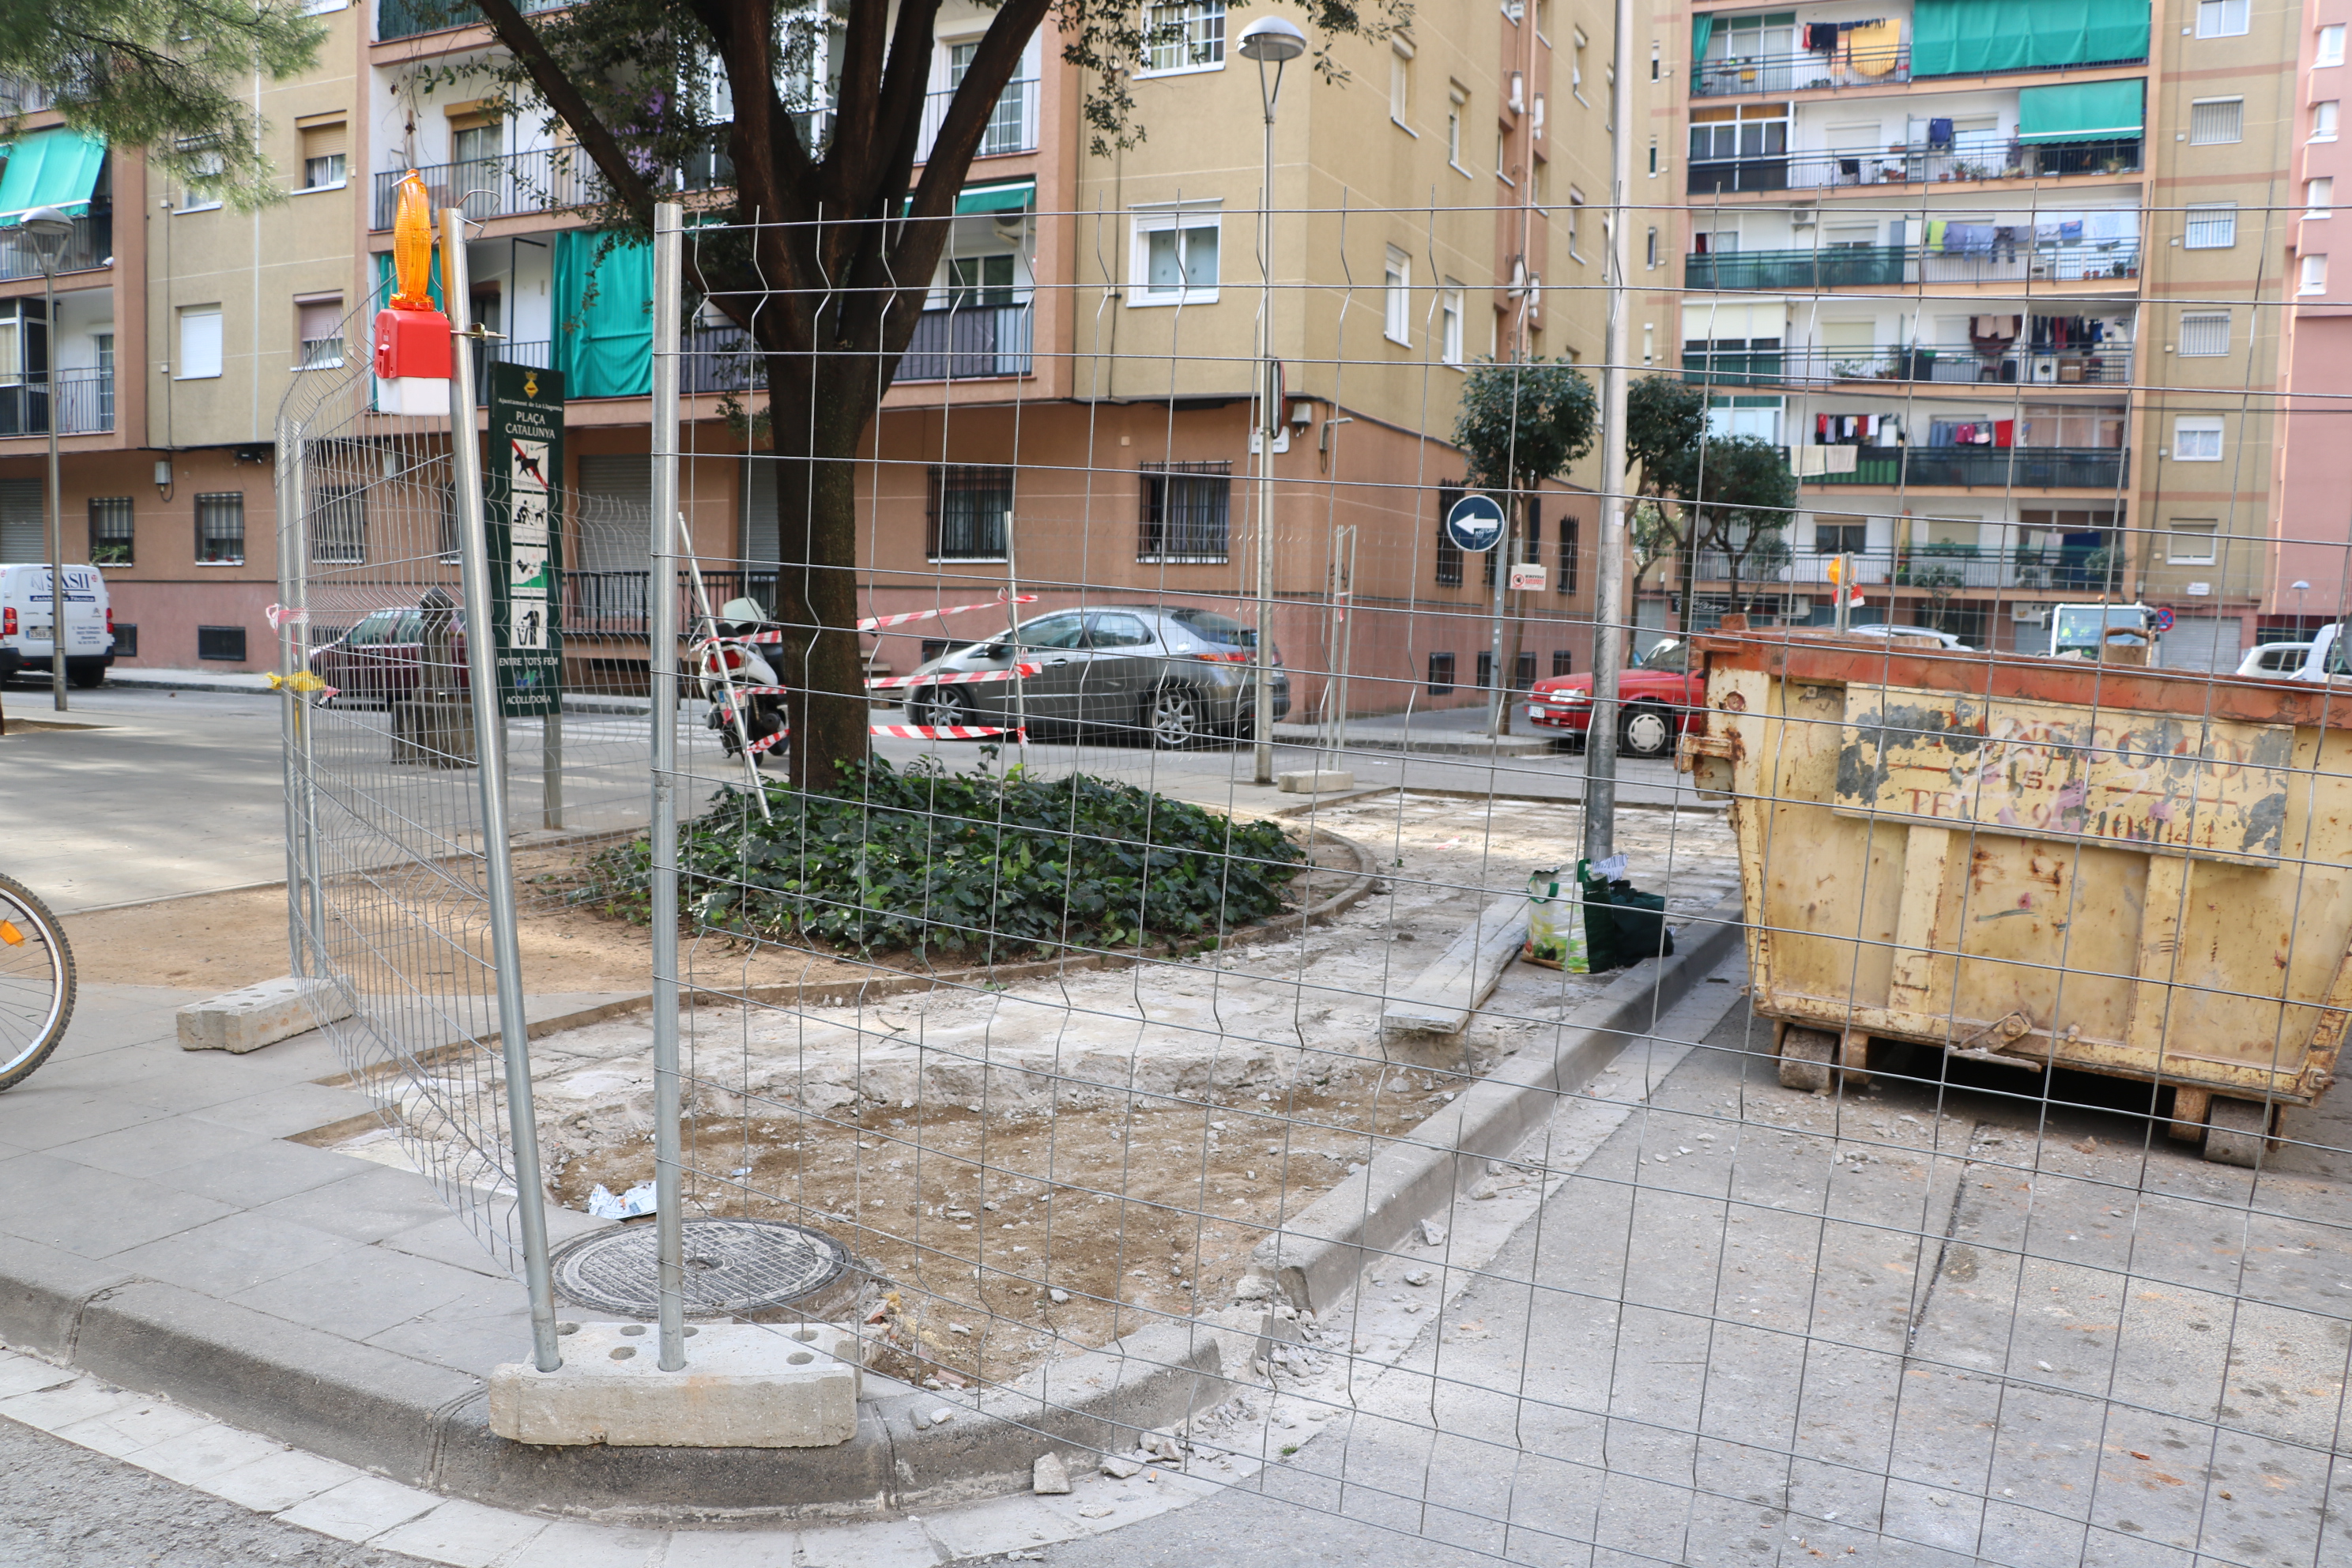 Ja han començat les obres de millora de la plaça de Catalunya